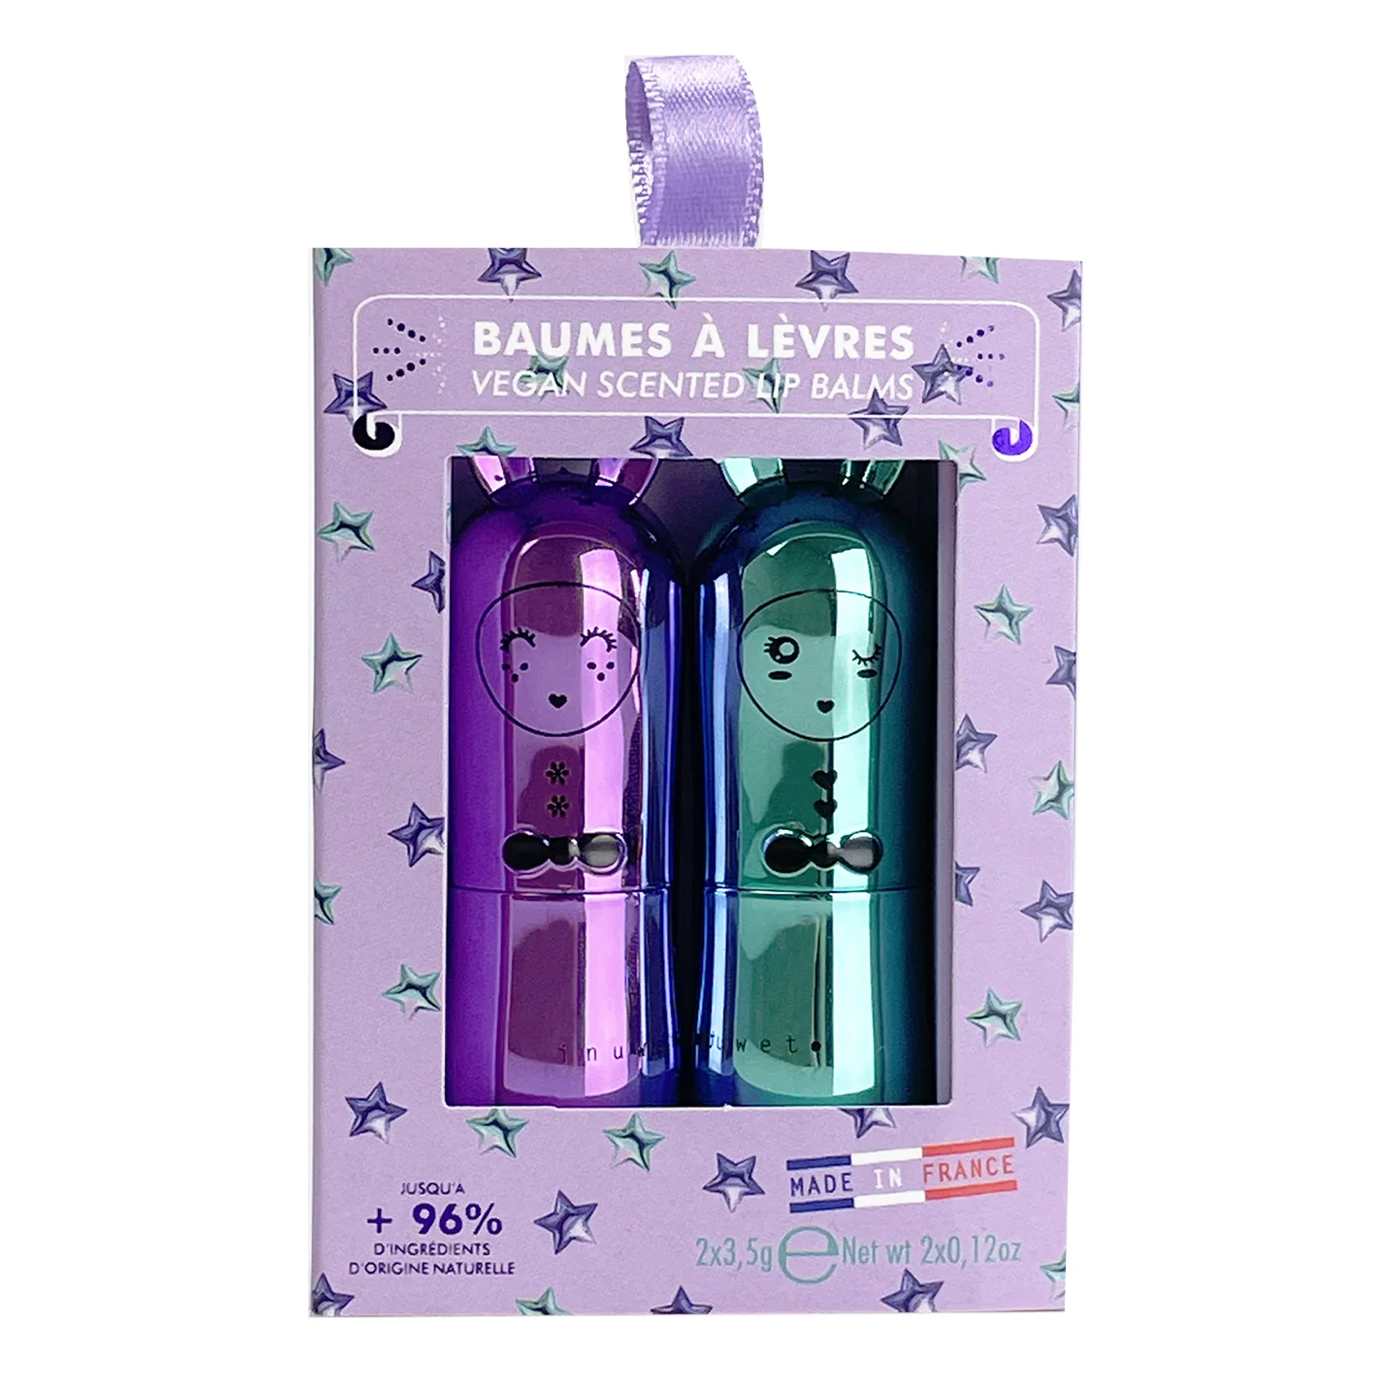  Inuwet Duo Lipbalm Gift Set  | Purple Ribbon